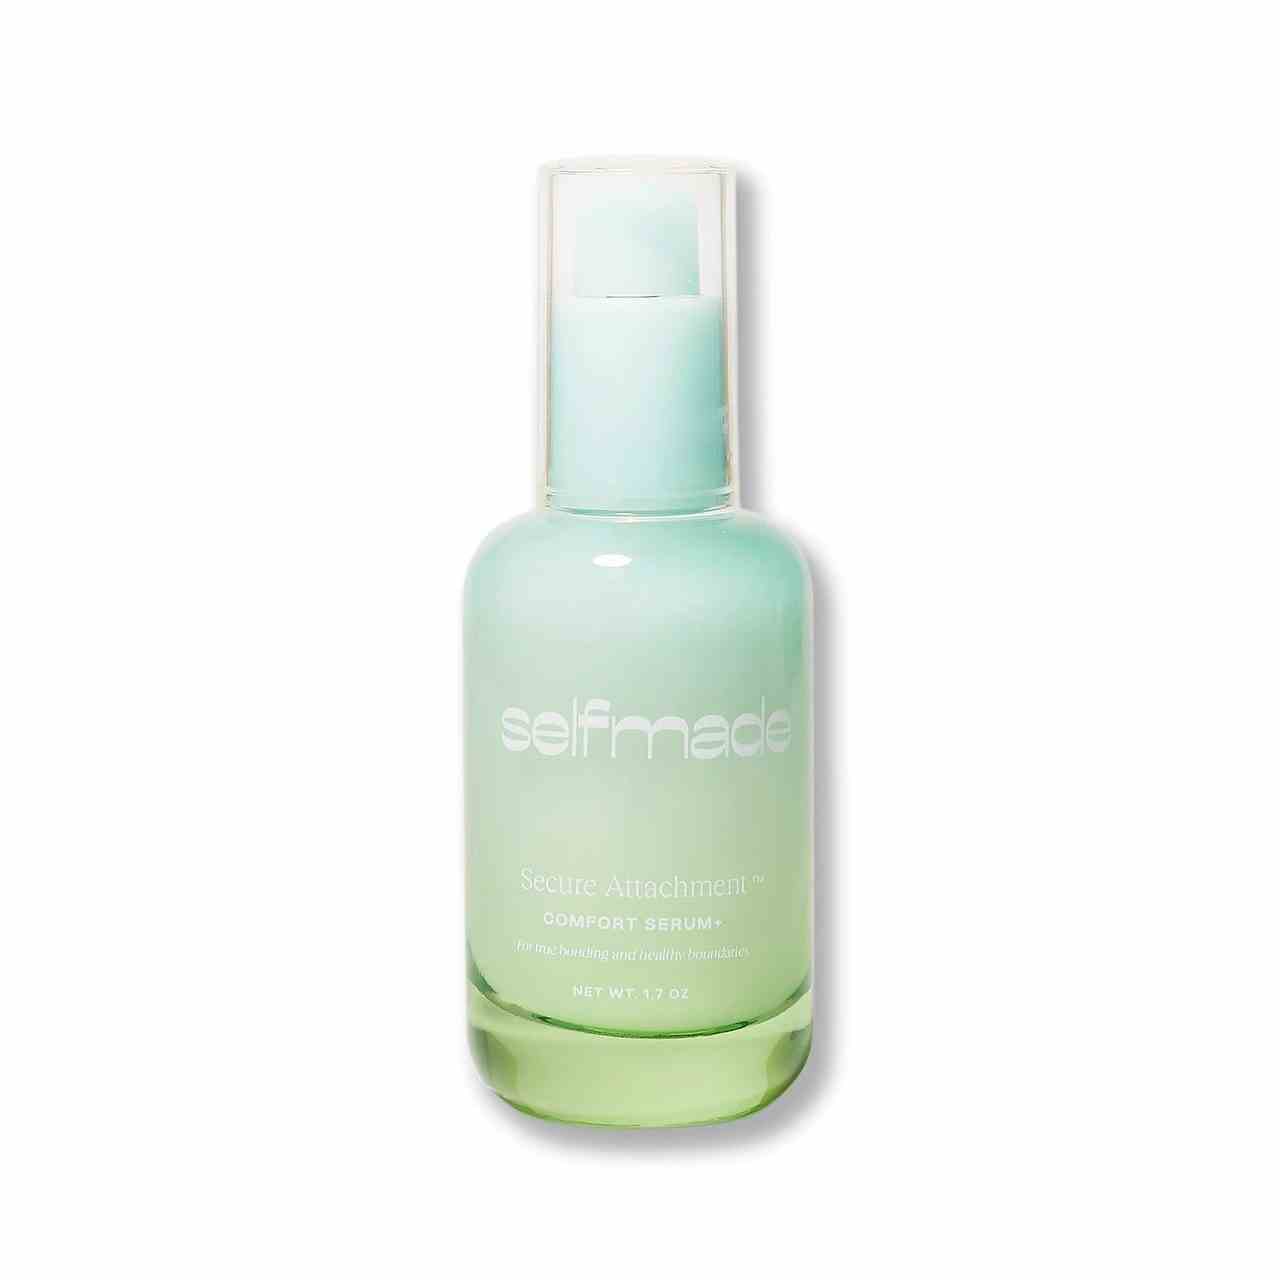 Selfmade Secure Attachment Comfort+ Serum blaue und grüne Flasche auf weißem Hintergrund